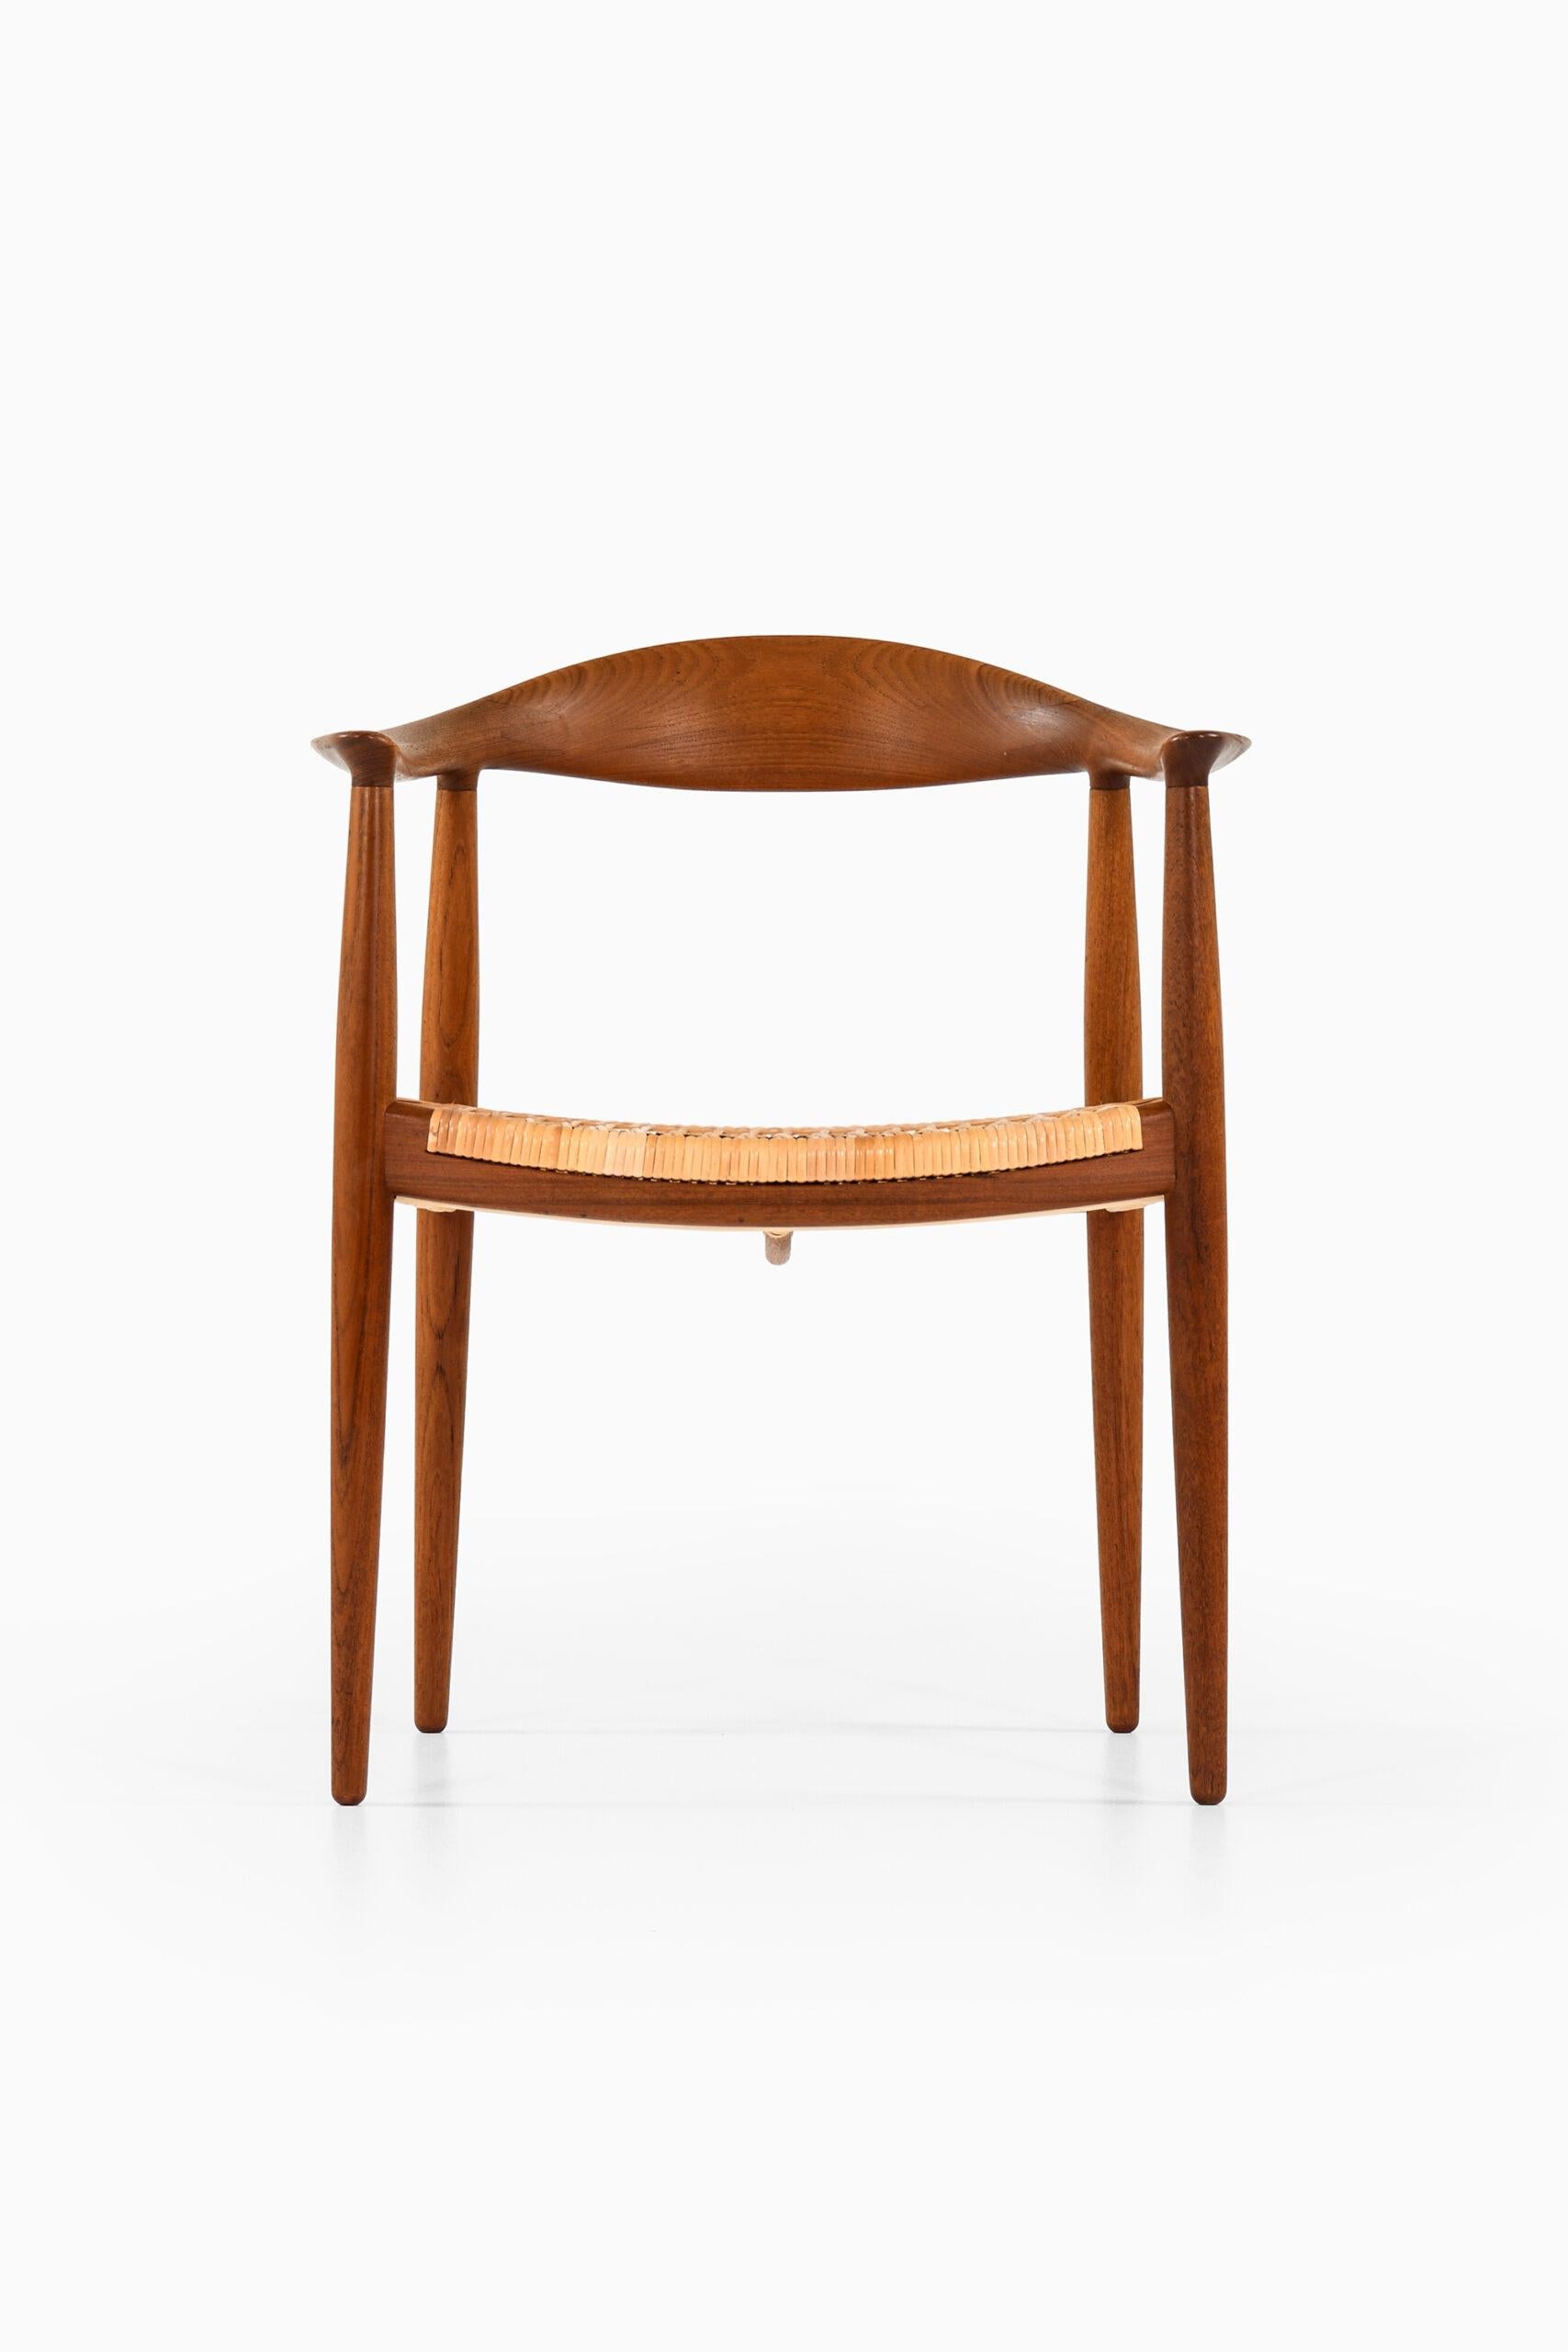 Seltener Sessel Modell JH-501 / der Stuhl entworfen von Hans Wegner. Produziert von Johannes Hansen in Dänemark.